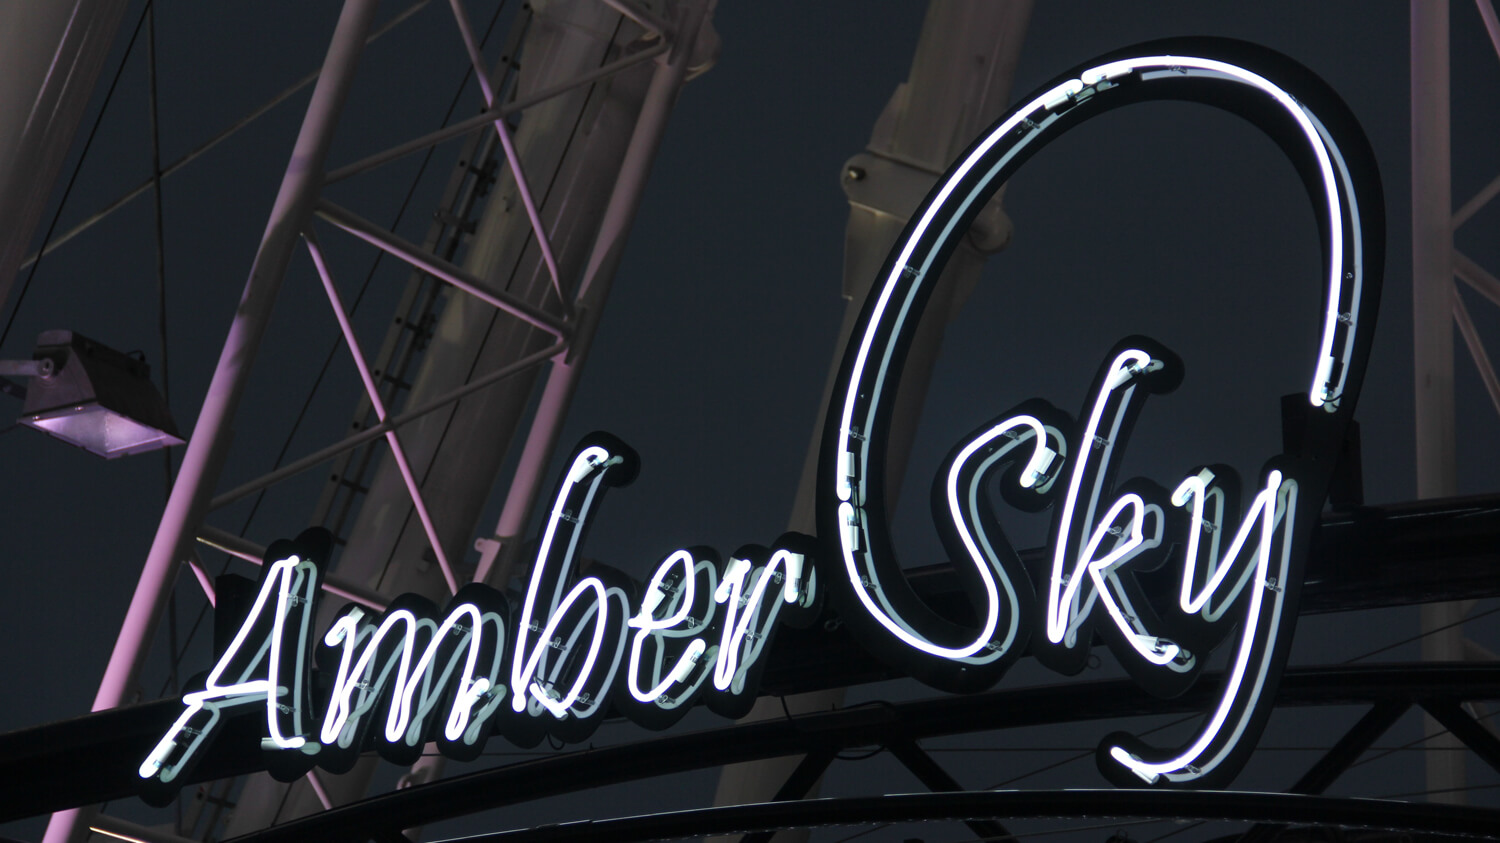 Cielo d'ambra - Amber Sky - insegna bianca al neon con il nome dell'azienda posta sul portapacchi